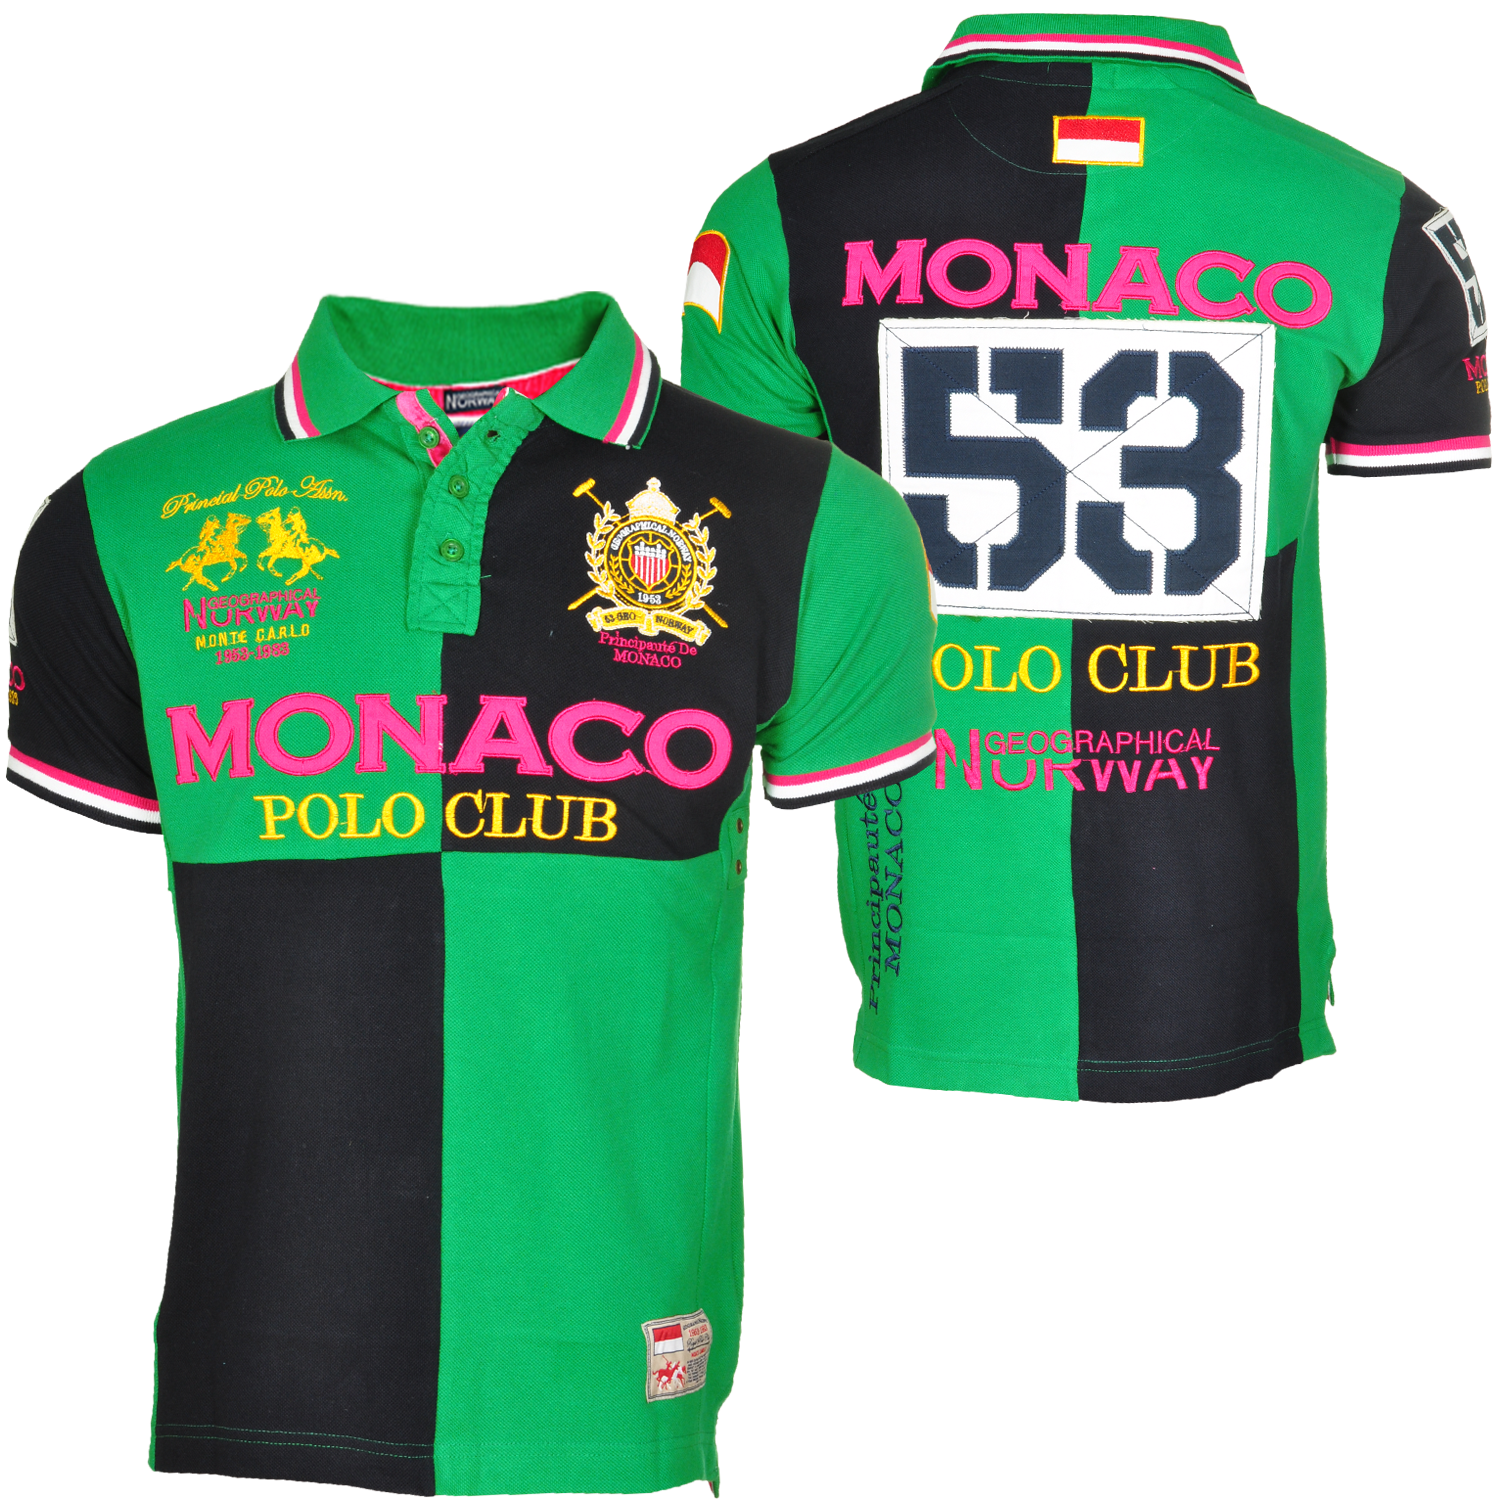 Foto Geographical Norway Monaco Polo Club Camiseta Polo Verde foto 75043